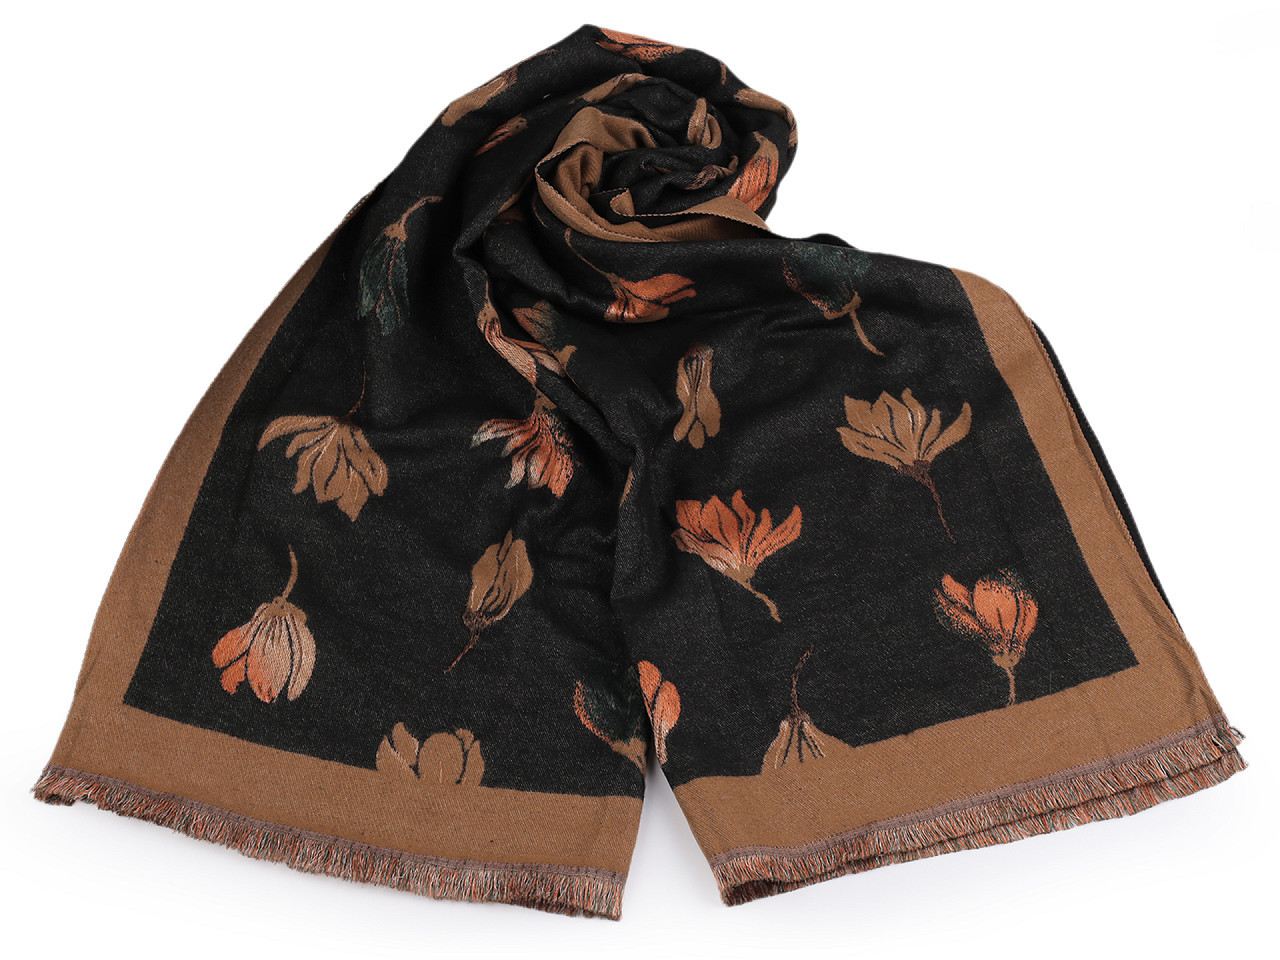 Šátek / šála typu kašmír s třásněmi, květy 65x190 cm, barva 18 béžová velbloudí hnědá tmavá